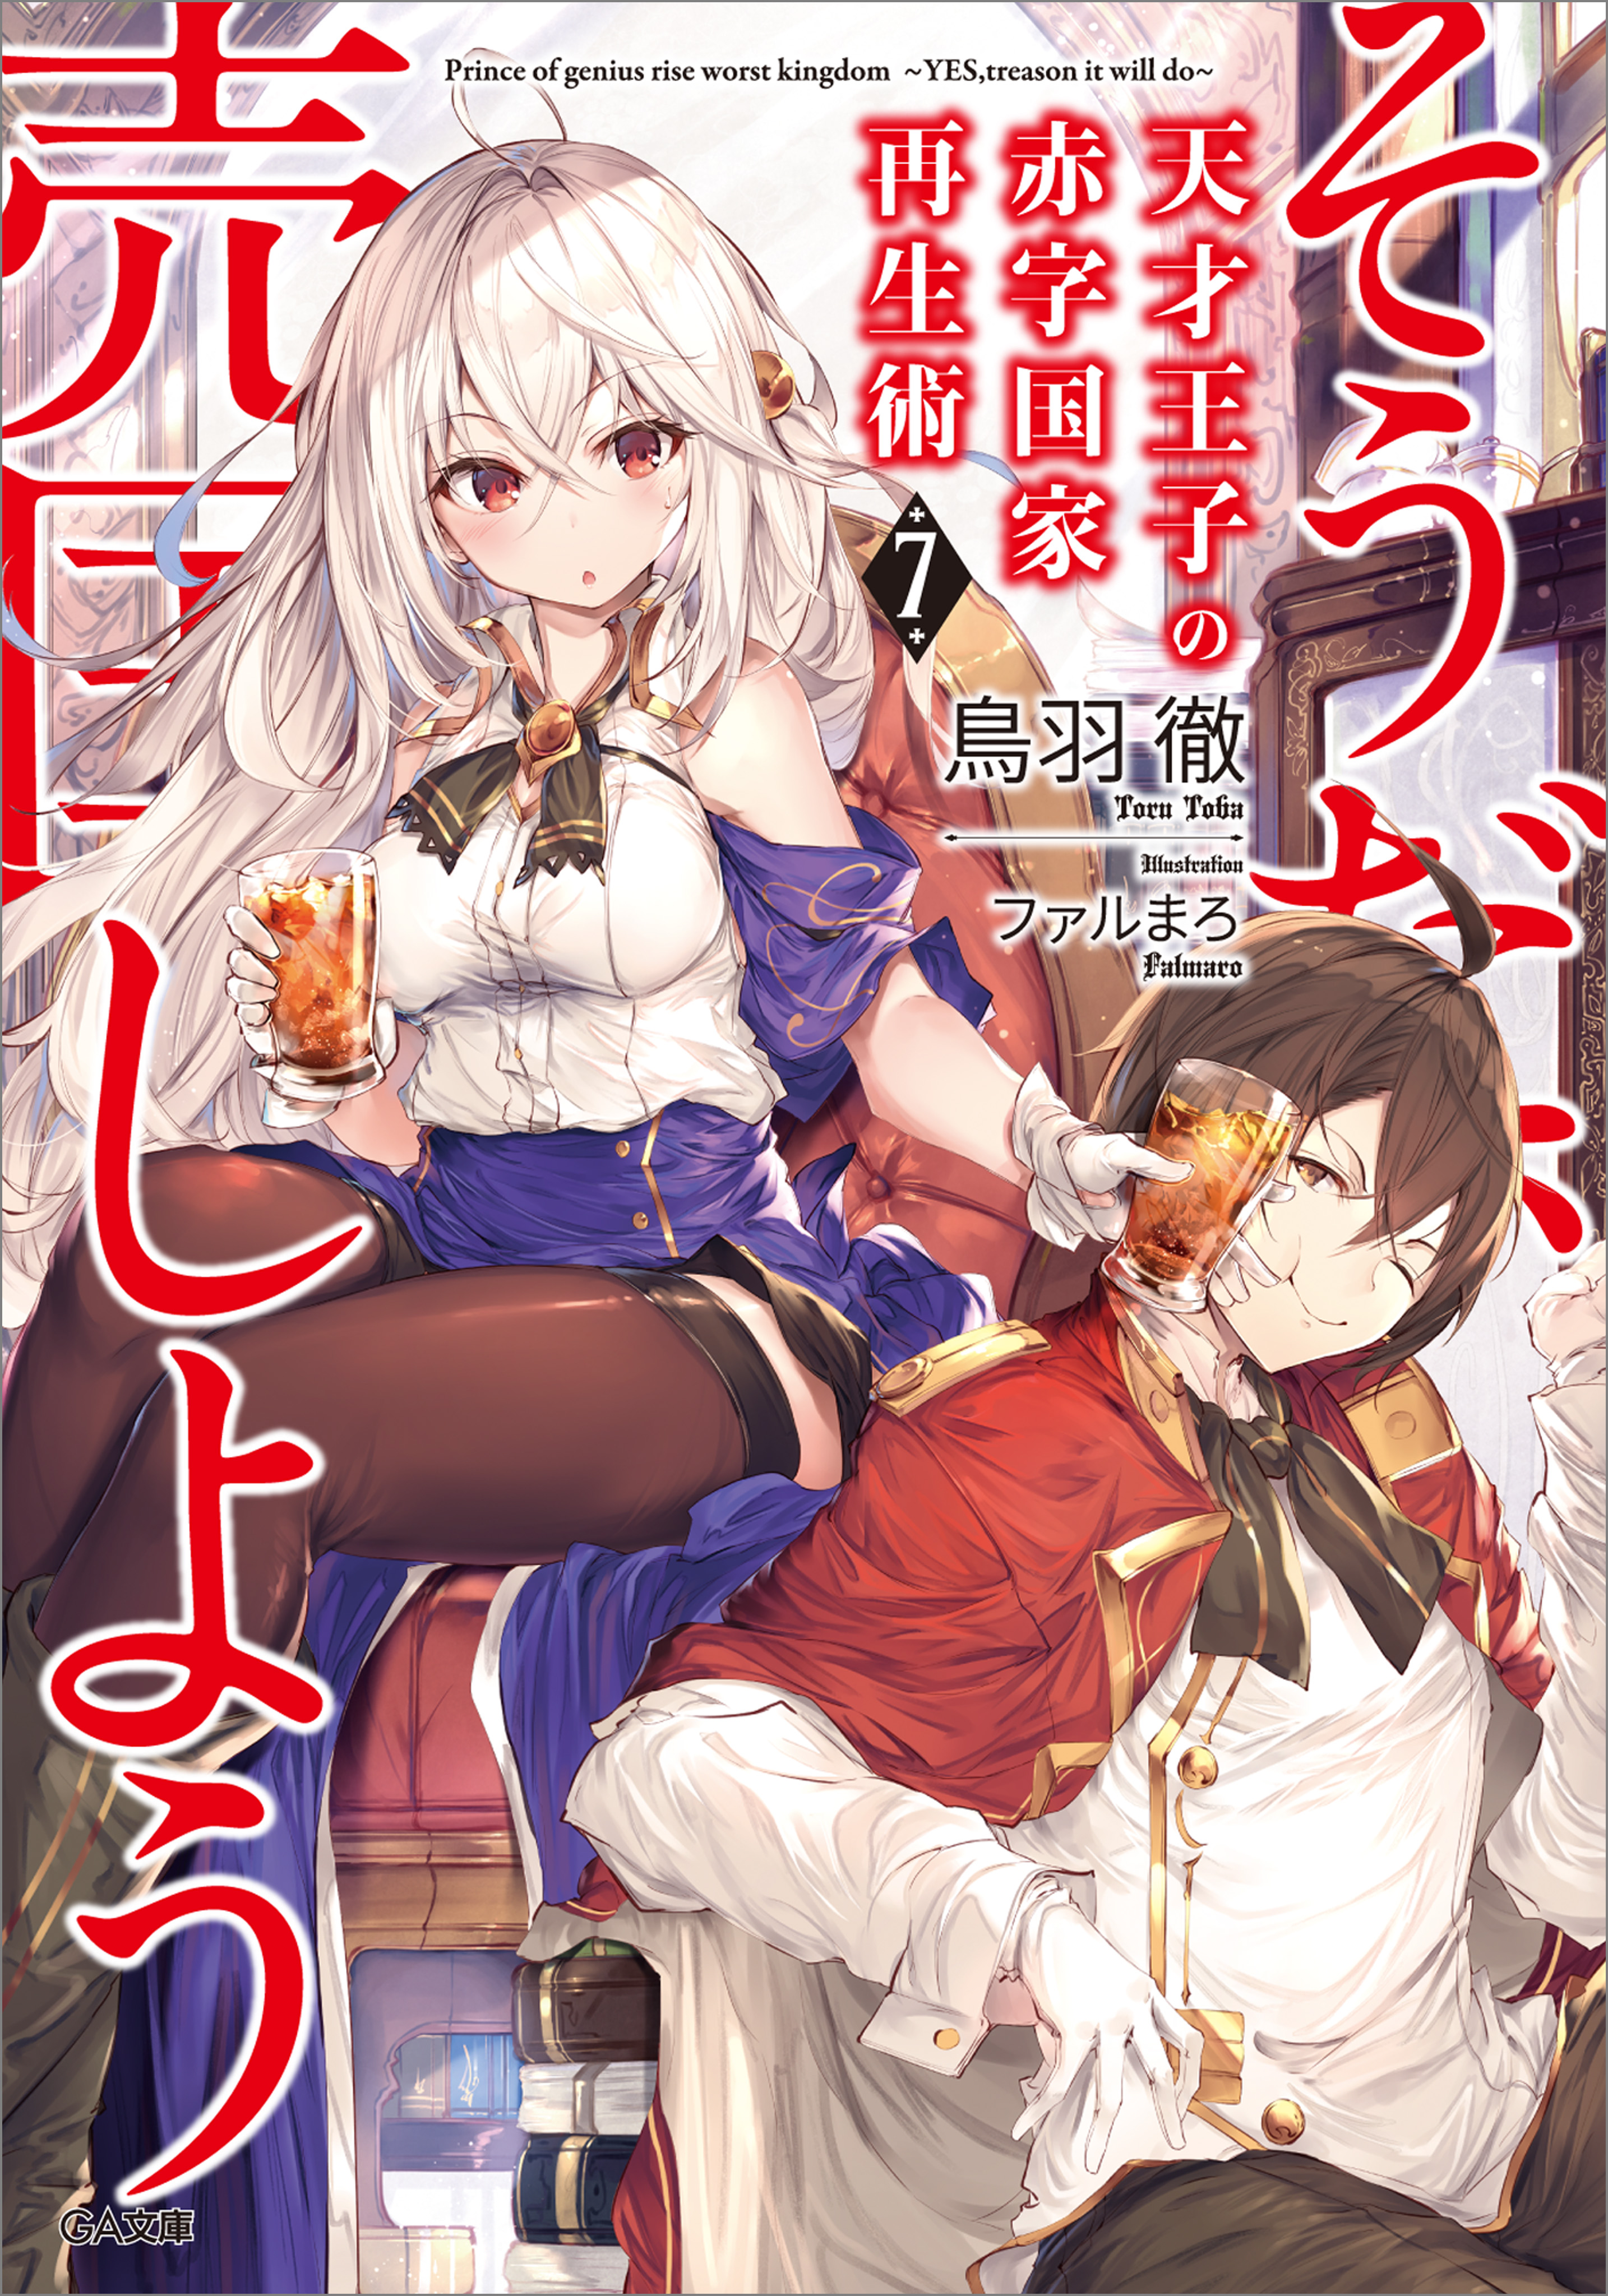 Light Novel Volume 7, Tensai Ouji no Akaji Wiki